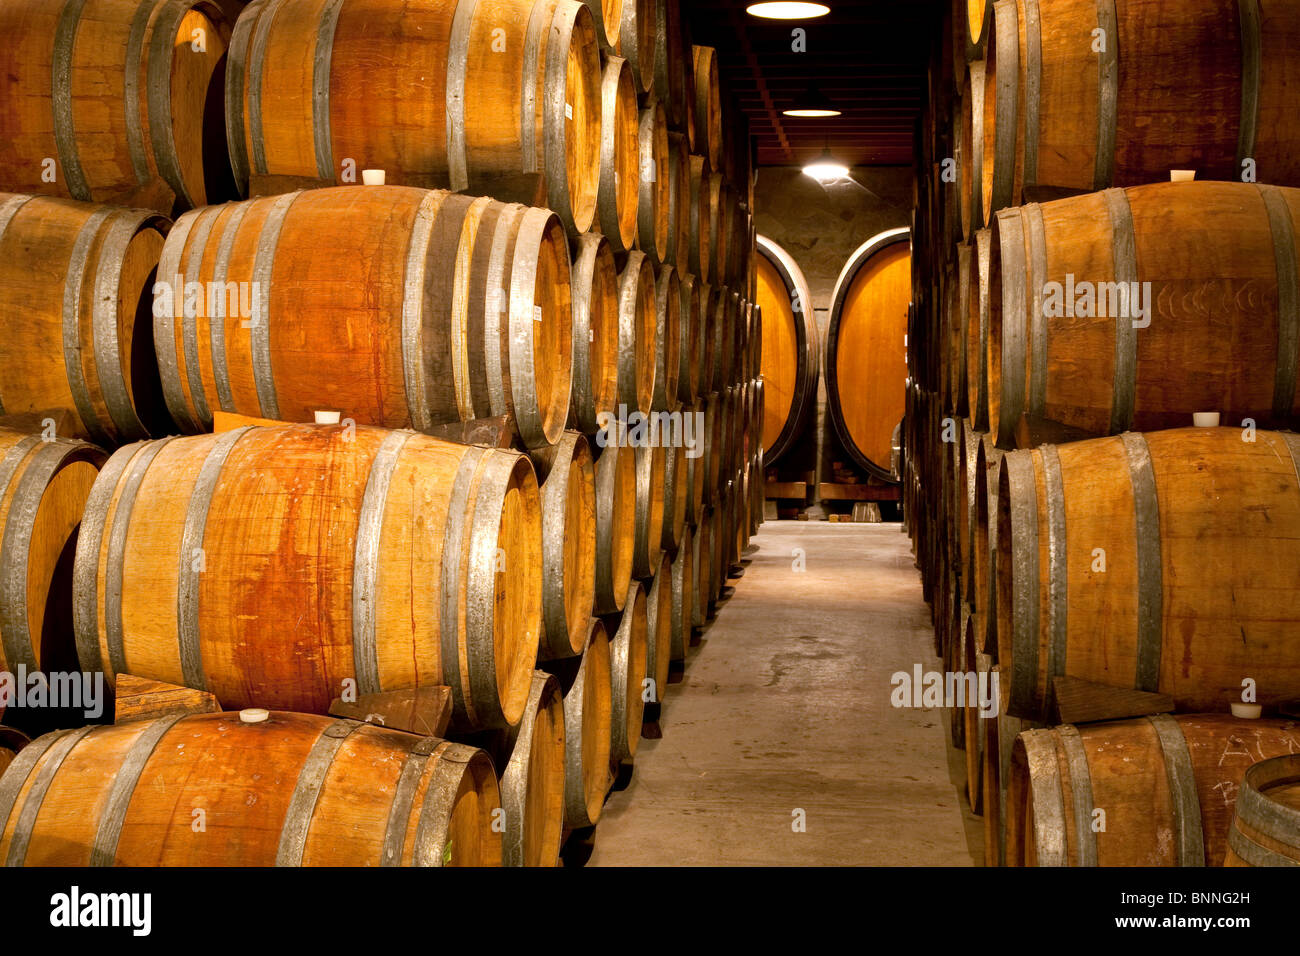 Barriles de vino en los Viñedos Sattui. Napa Valley, California. Foto de stock